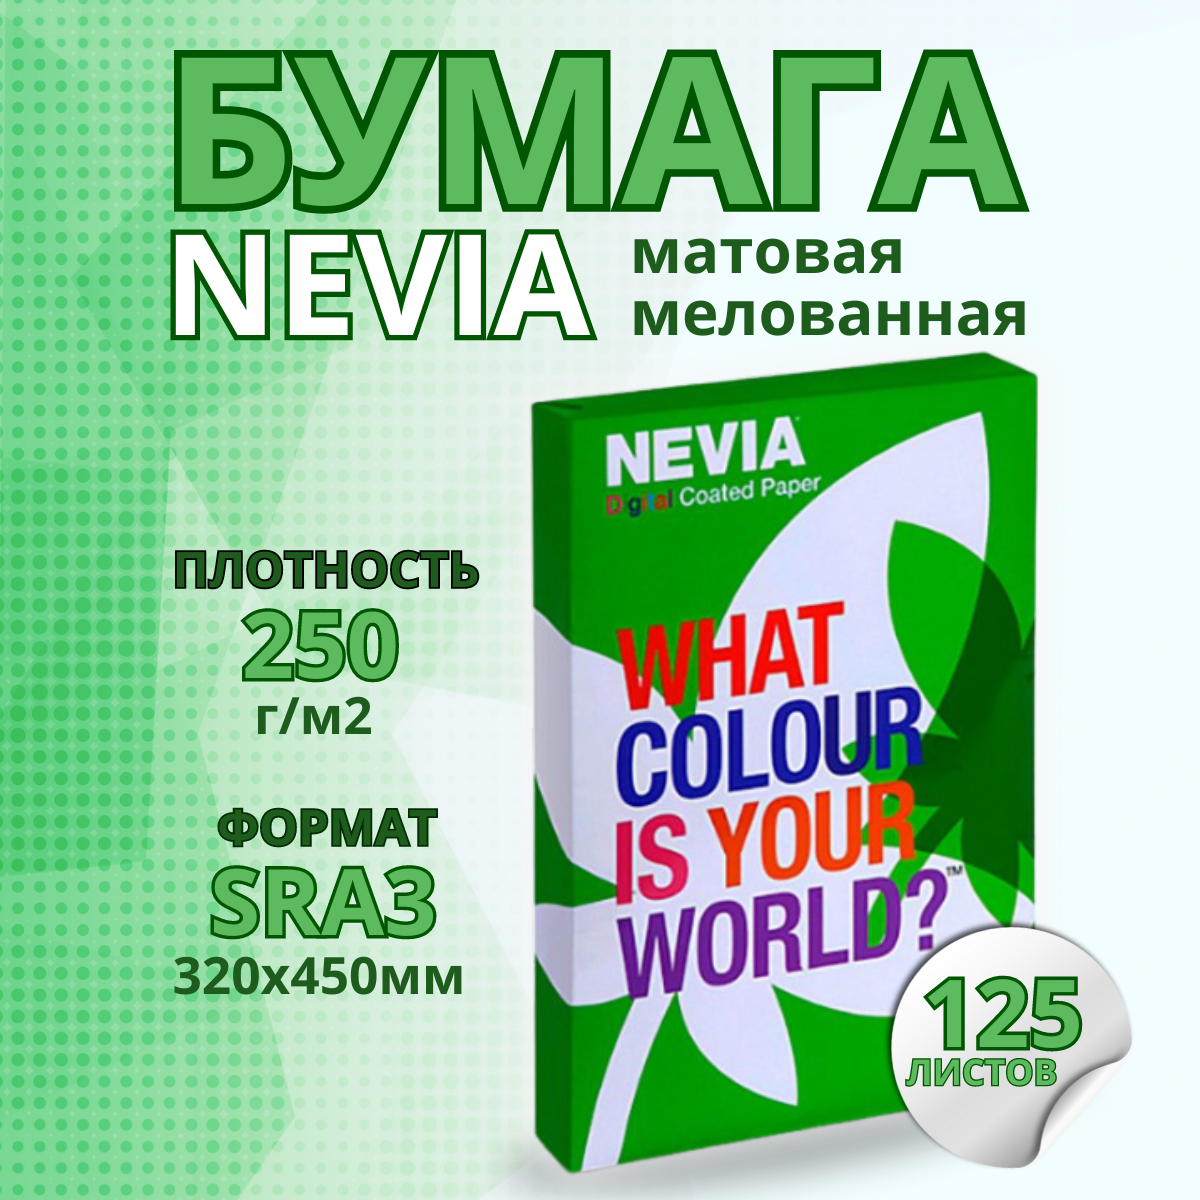 Бумага мeлованная NEVIA мат. бел.250 г/м2, 320x450 мм (SRA3) 125л